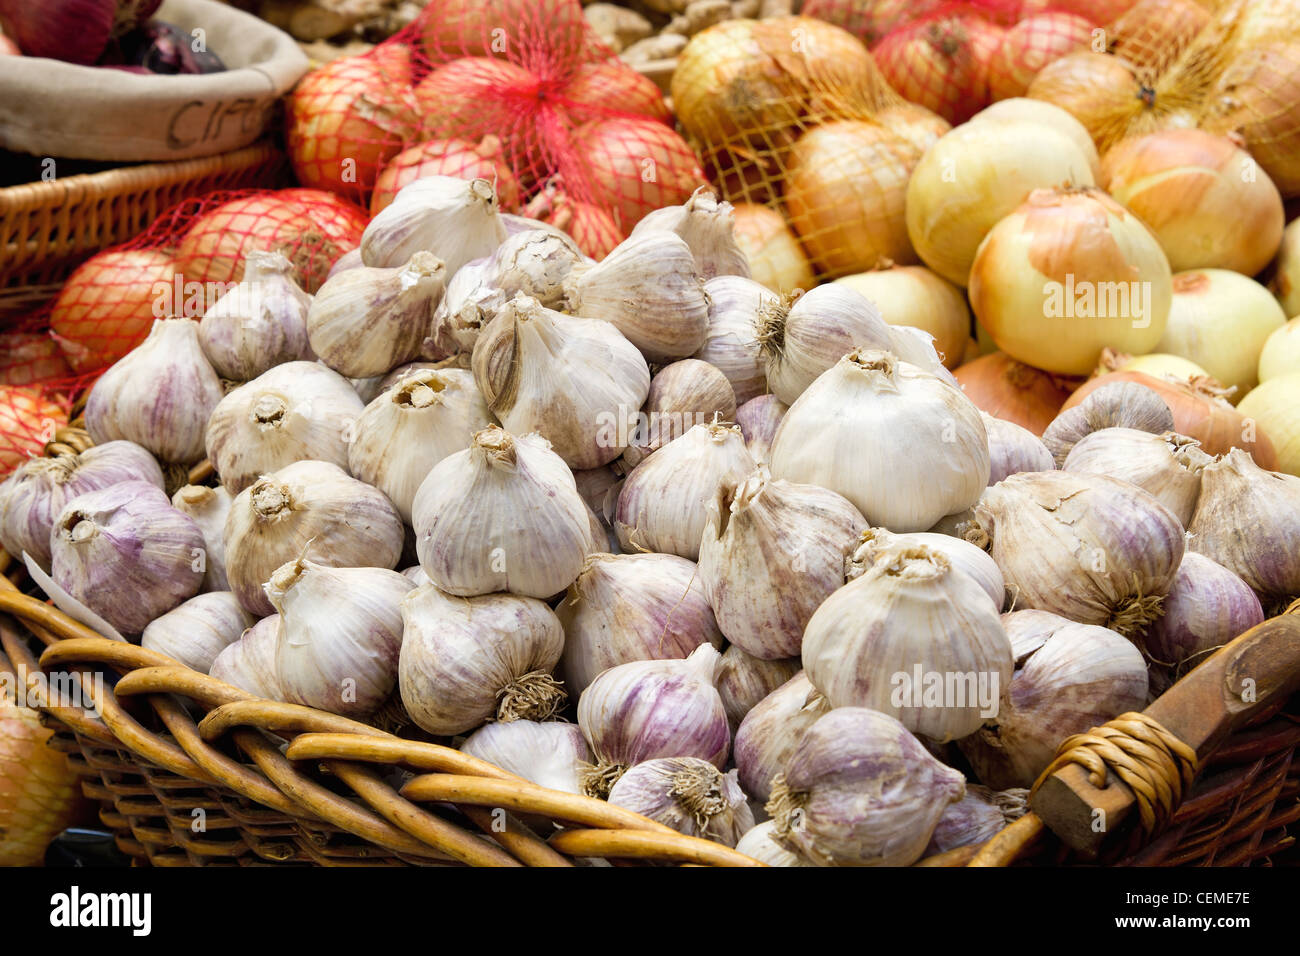 Bulbes d'ail et d'oignon à l'affichage Public Market Vegetable Stall closeup Banque D'Images